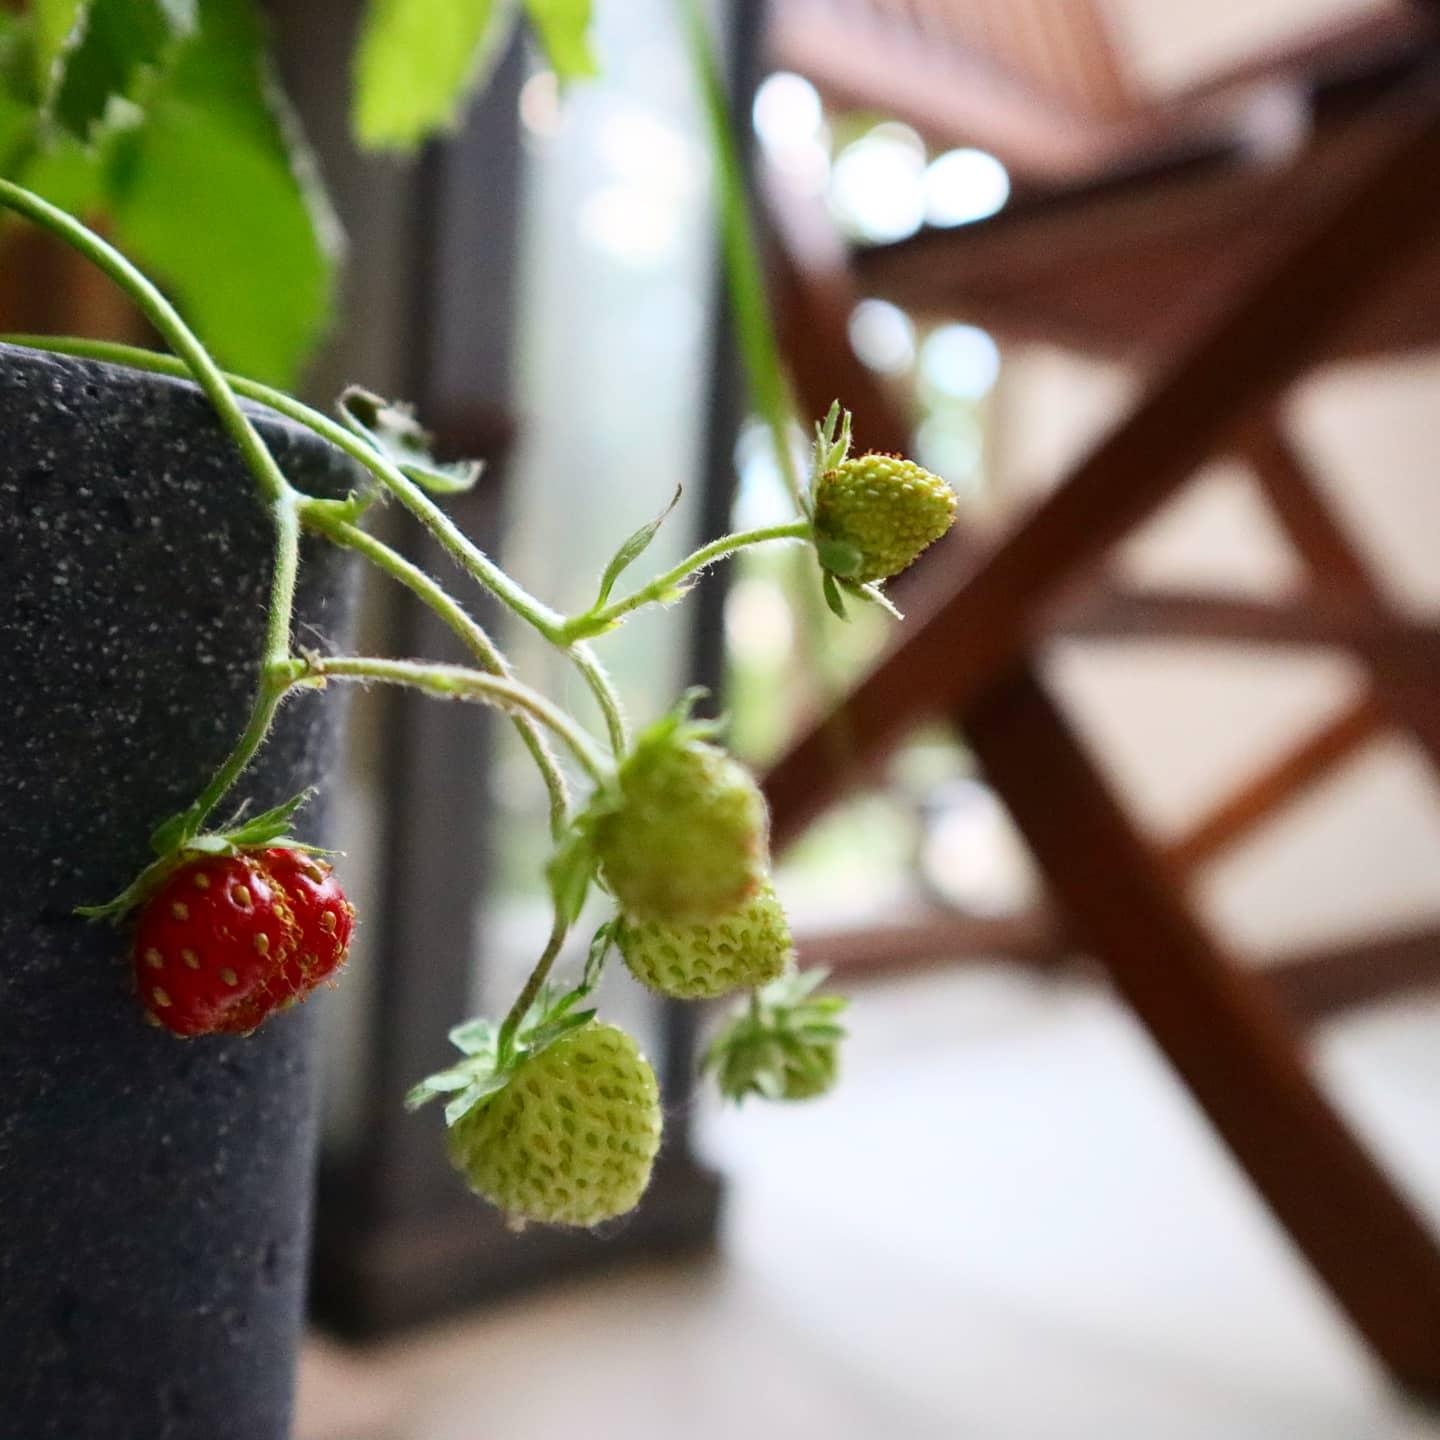 Erdbeerernte 🍓😍
#balkonfrüchte #erdbeeren #balconygardening #süßefrüchte